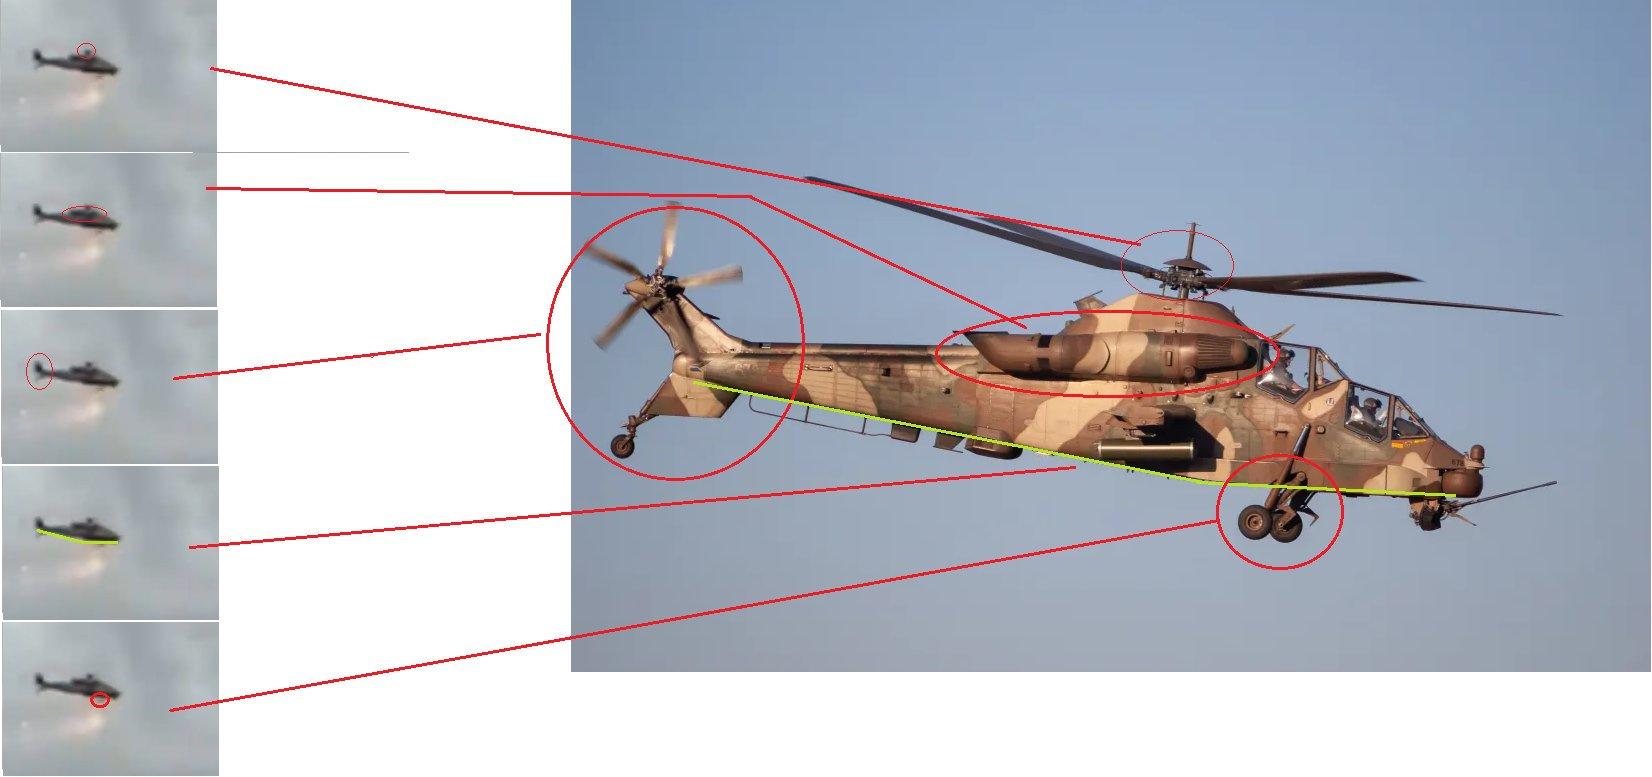 Factcheck: nee, video toont geen aanval met Russische helikopters in Mali